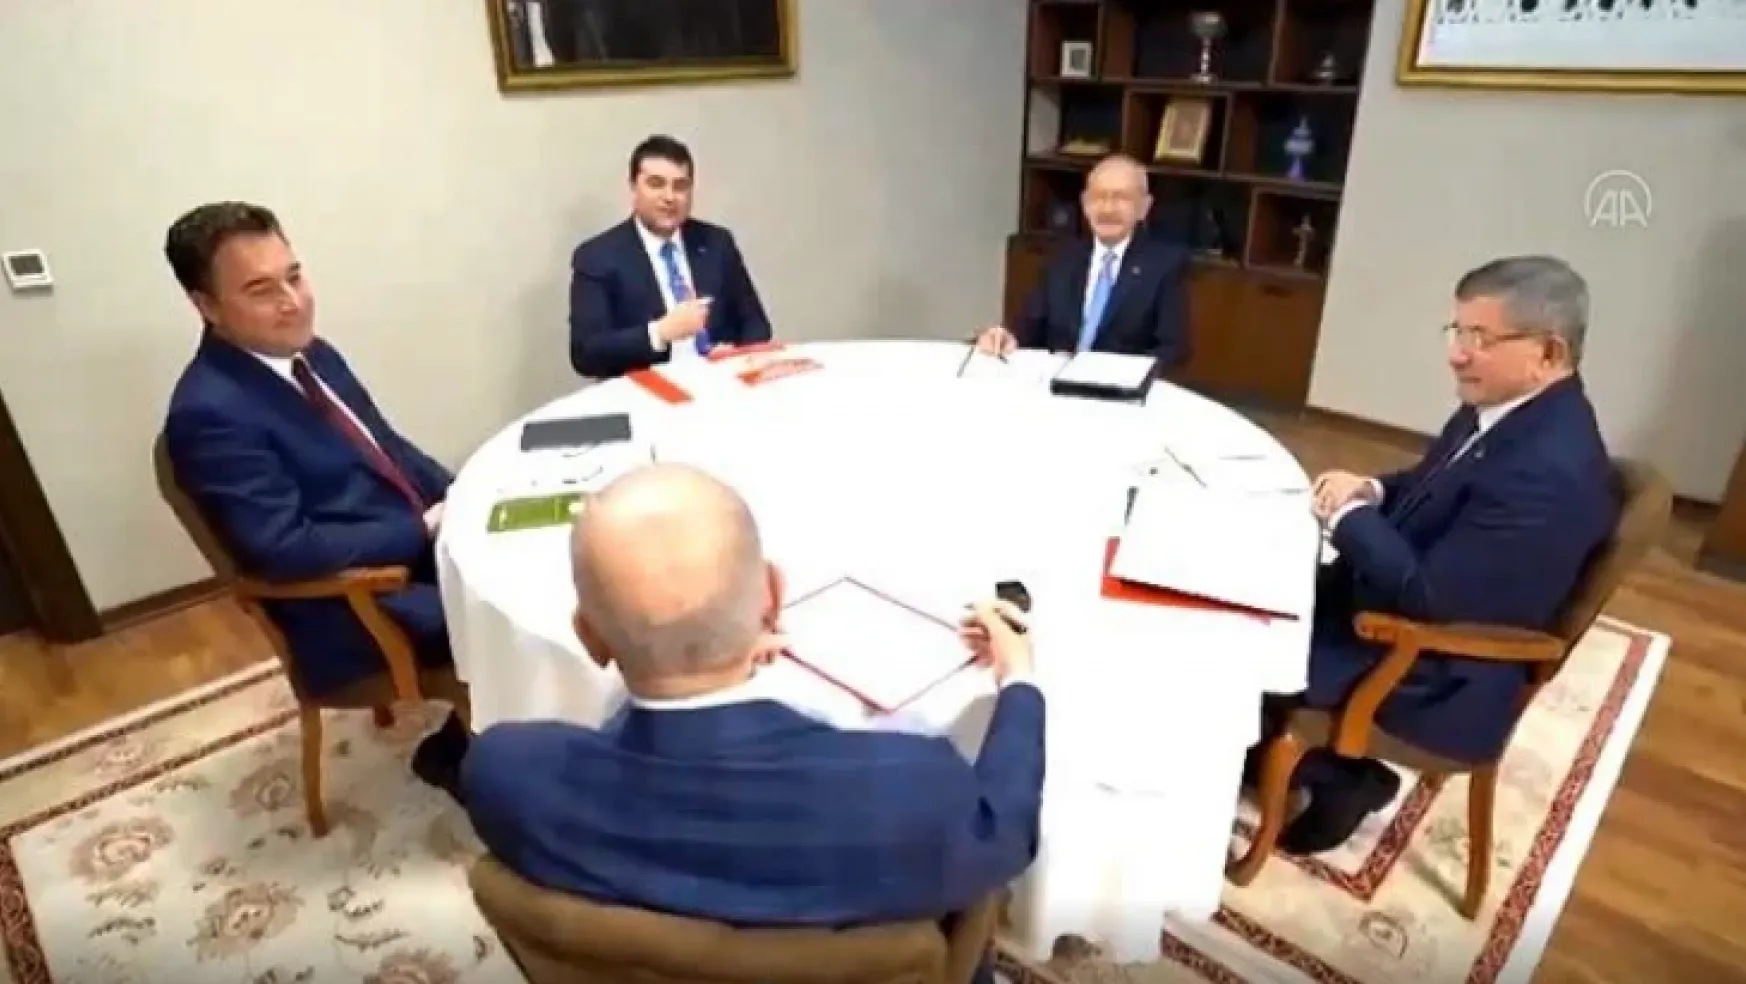 Beş parti lideri, bugün toplanıyor: Kılıçdaroğlu'nun adaylığının ilan edilmesi bekleniyor